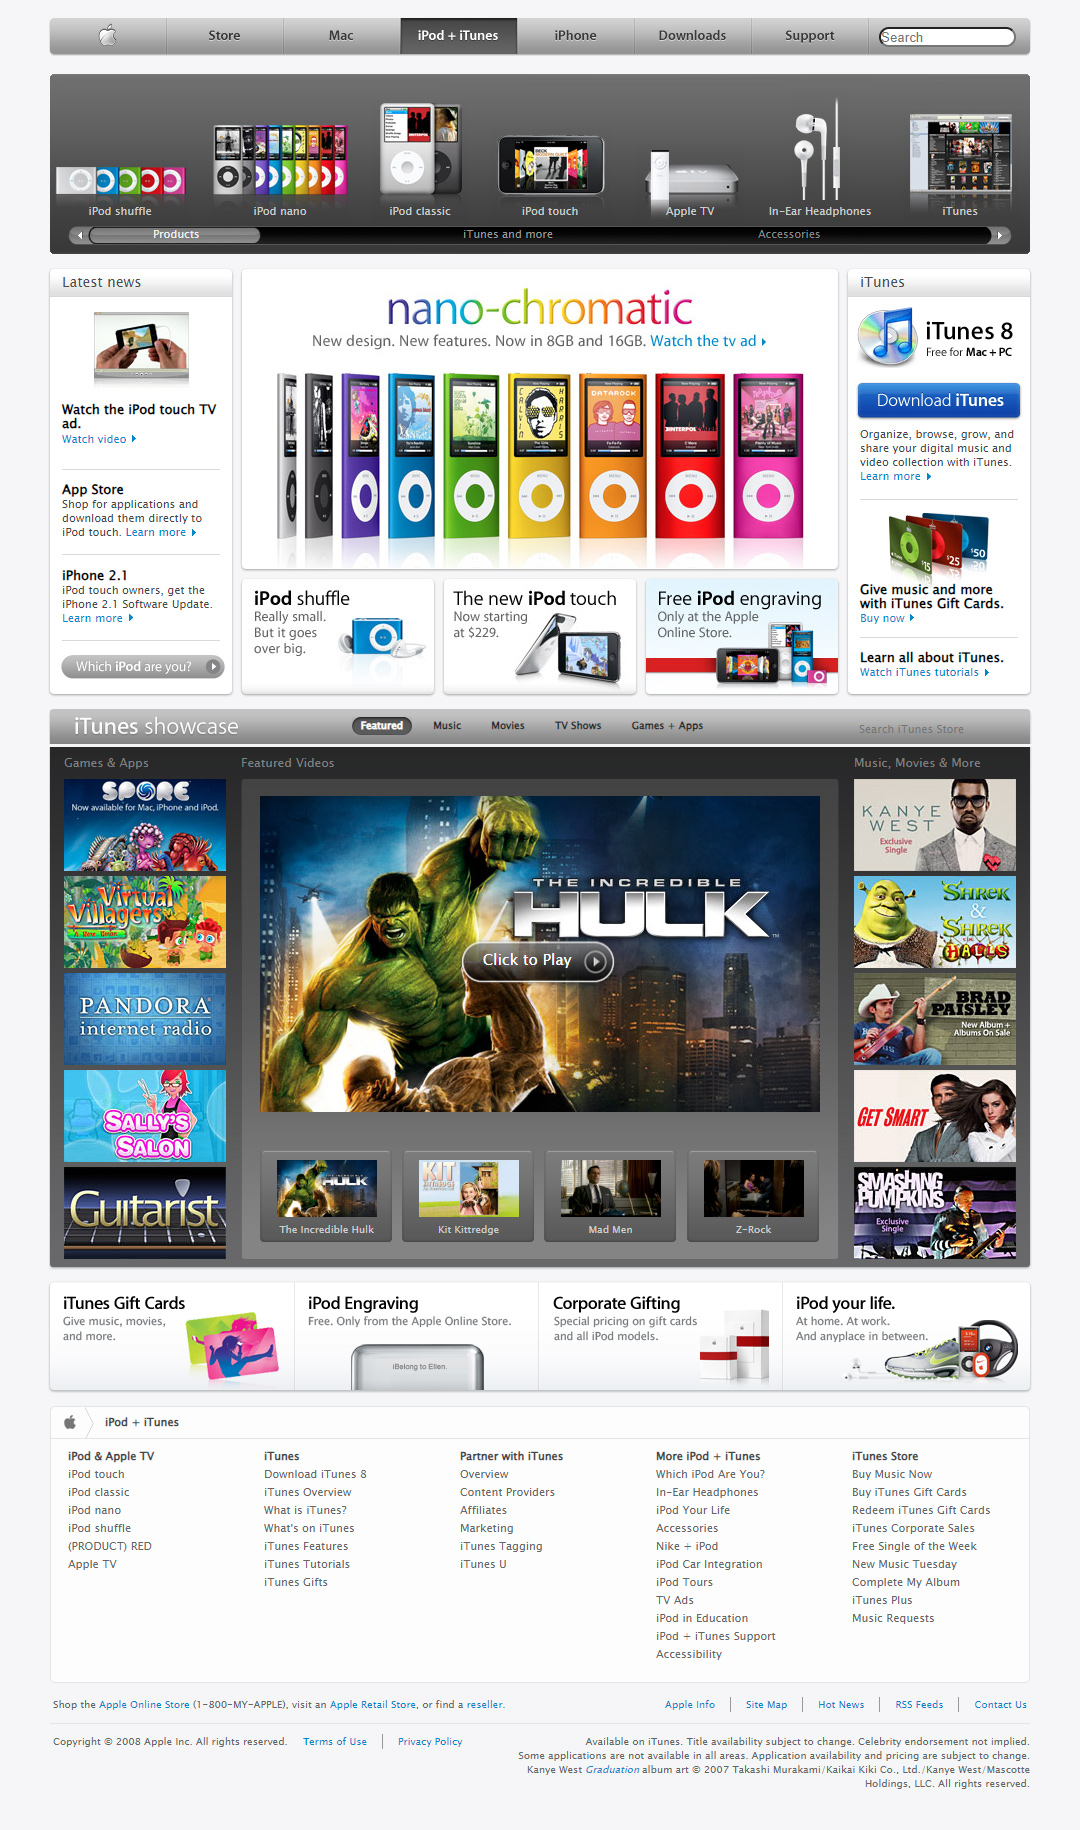 iTunes website in 2008